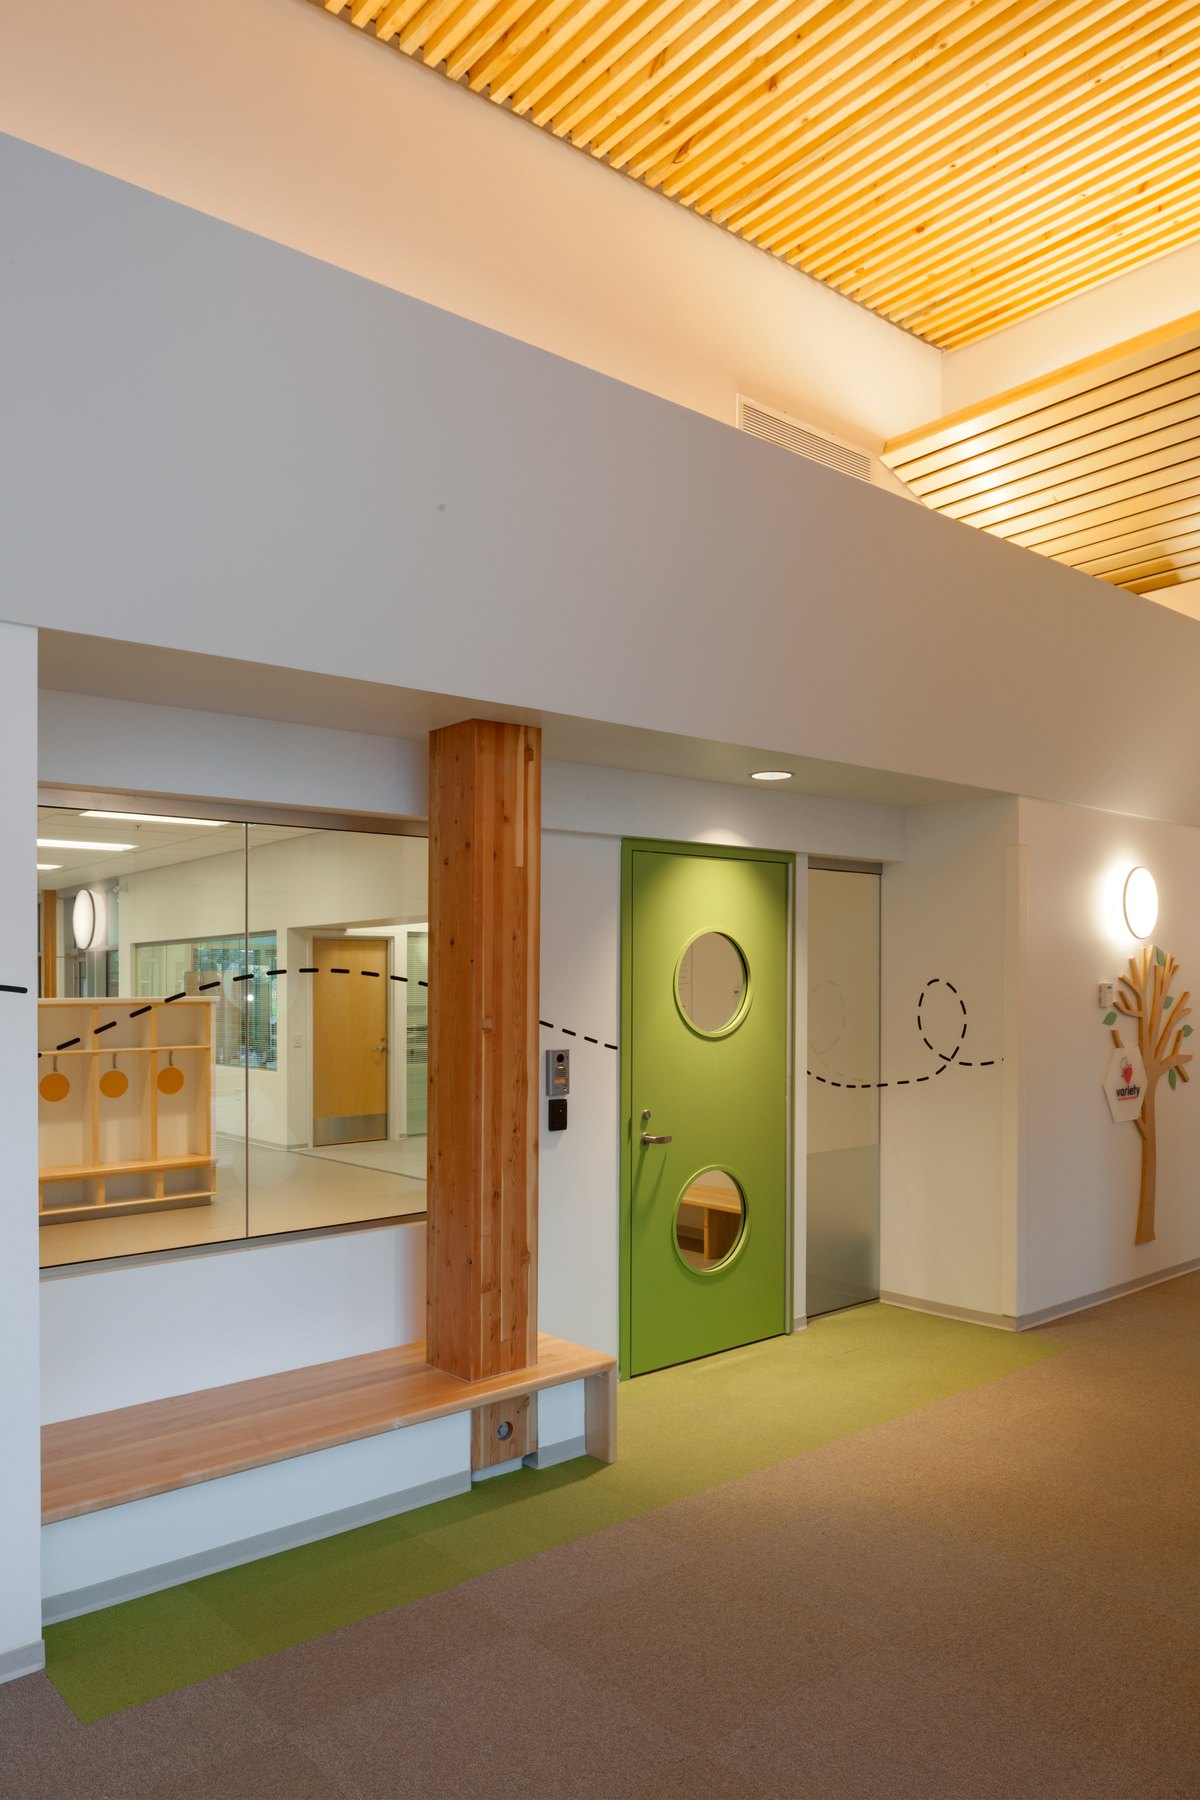 太平洋自闭症家庭中心明亮阳光的室内景观，展示了彩色的绿色室内门附近的胶合木(胶合木)柱支撑着上面的尺寸木材板条天花板